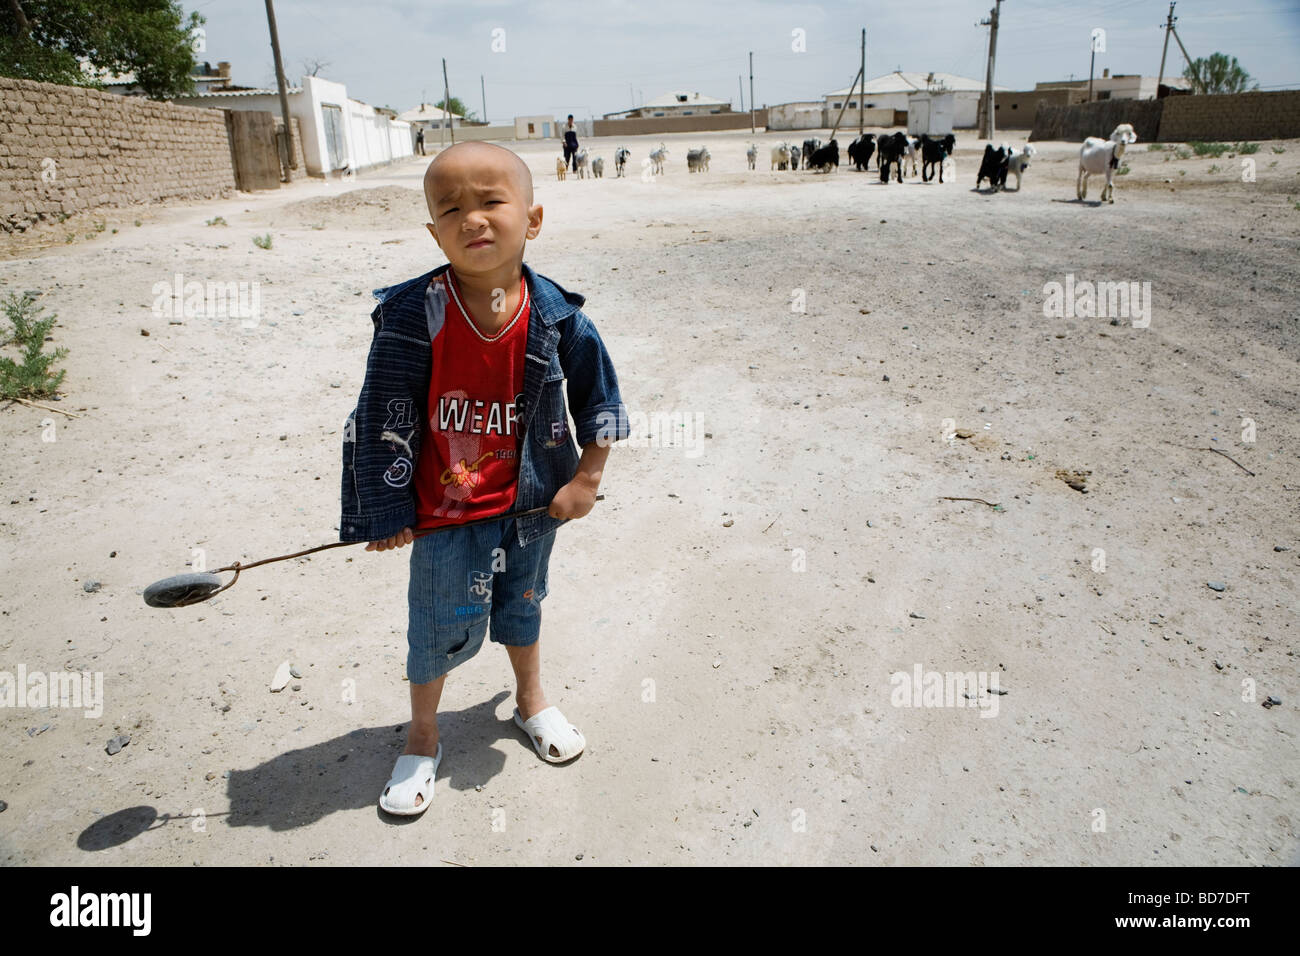 Un petit garçon jouant sur la sreet dans Moynaq, un ancien port de pêche près de la ville d'Aral, l'Ouzbékistan. Banque D'Images